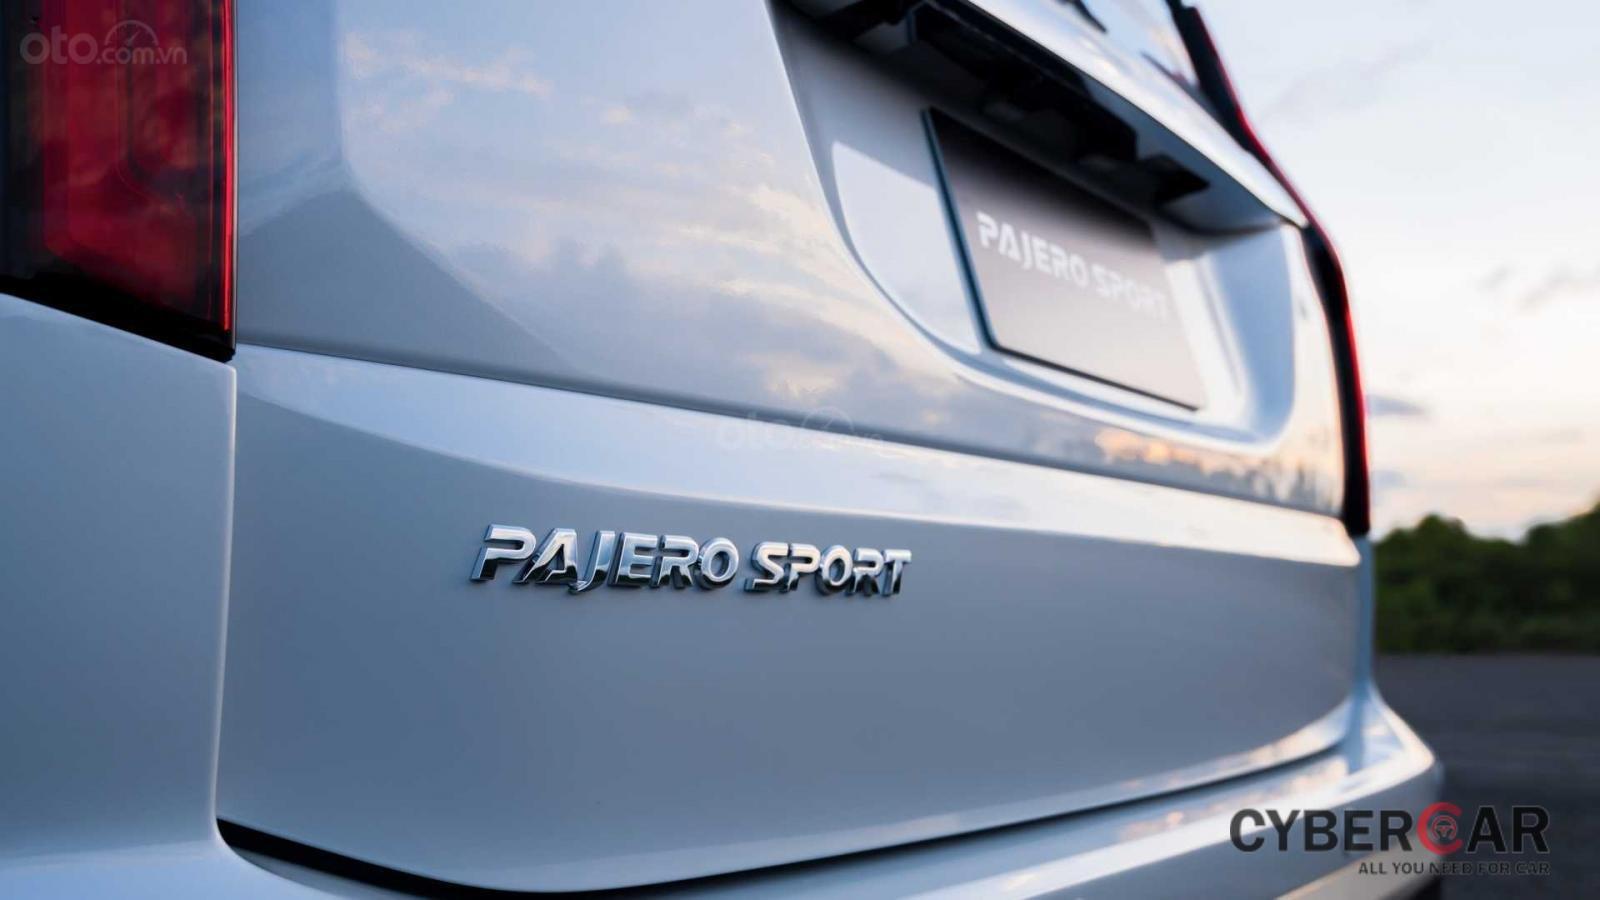 Nhìn nhanh điểm mới của Mitsubishi Pajero Sport 2020 so với bản cũ qua ảnh a15